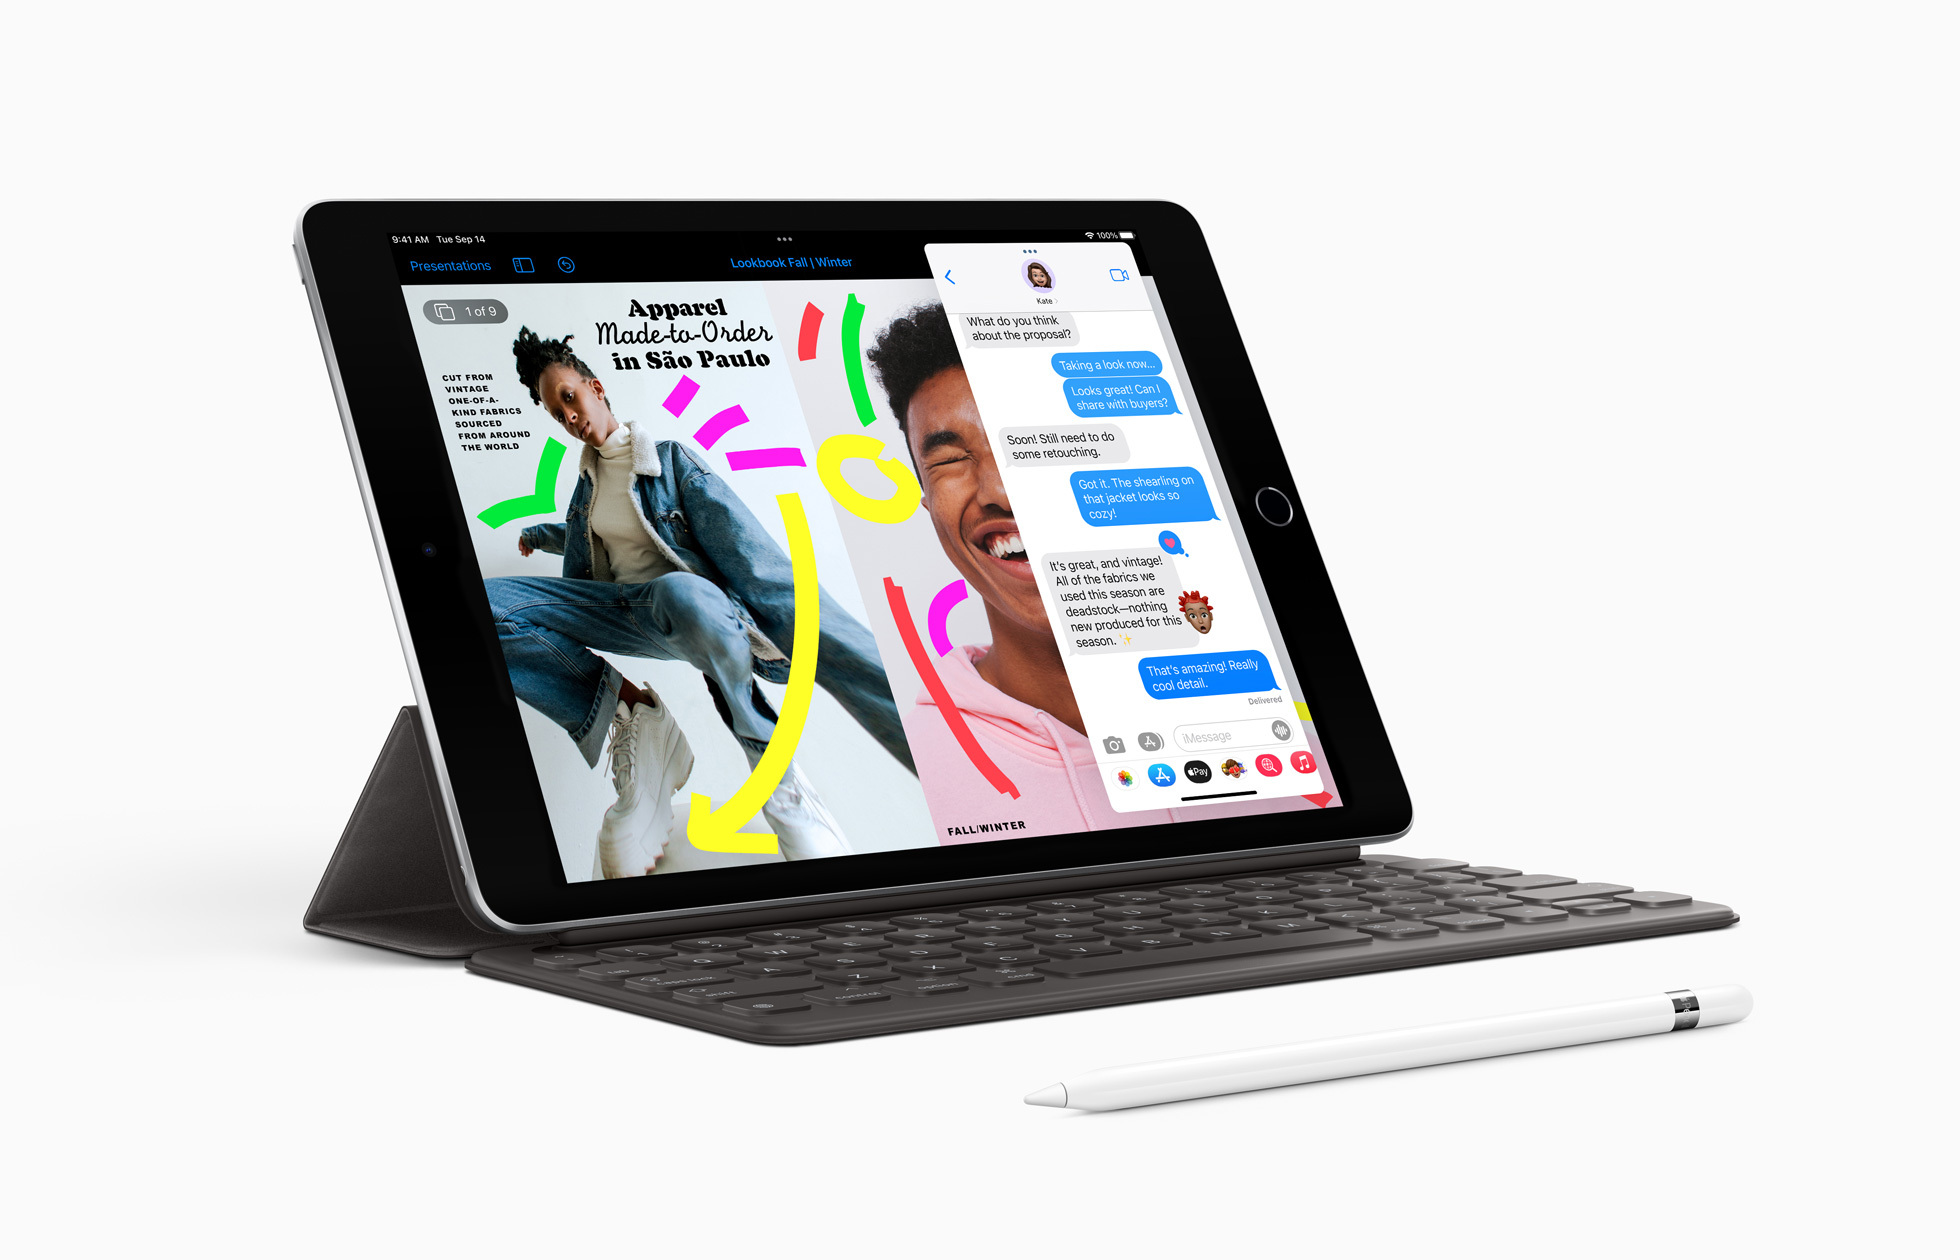 第 9 代 iPad 大幅躍進，以驚人的實惠價格帶來眾多先進功能。